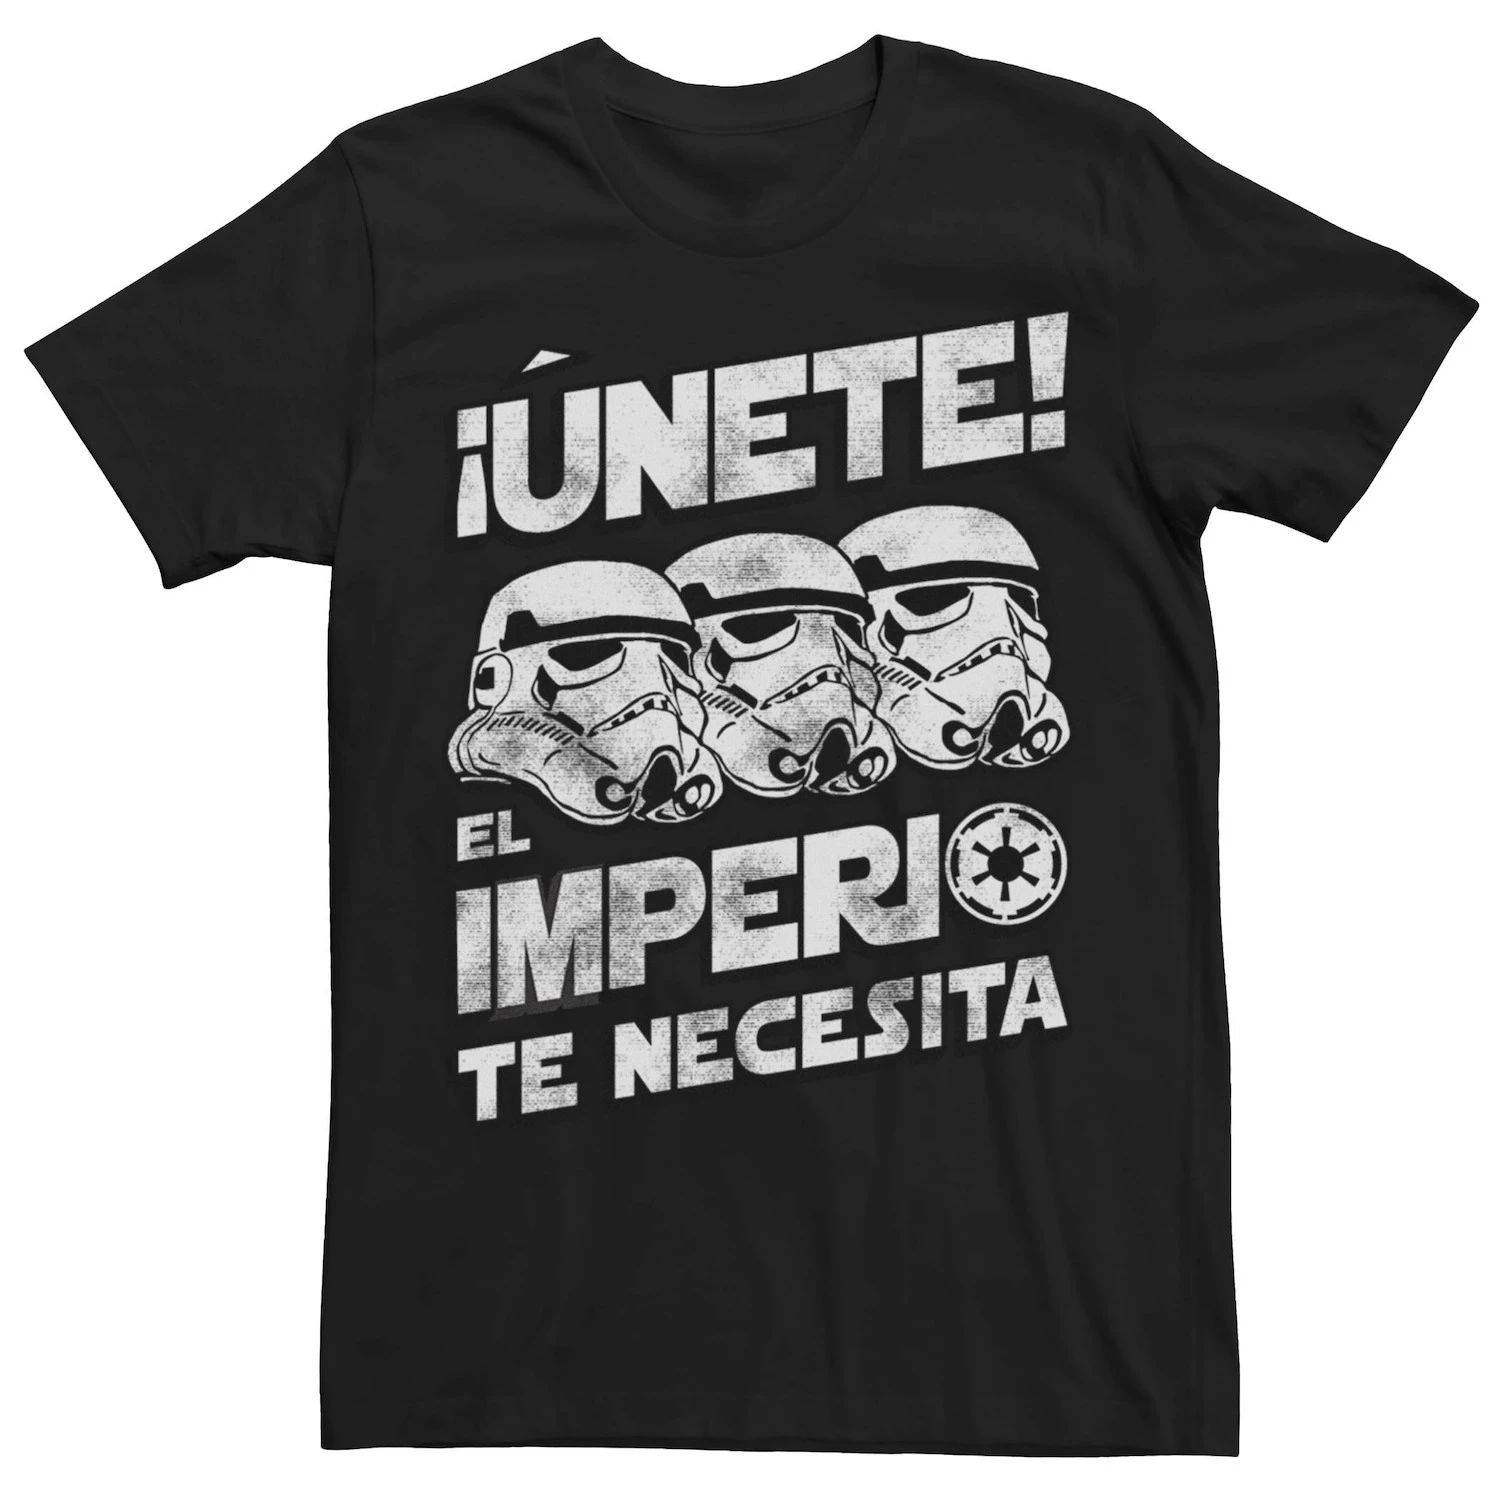 Мужская футболка с выцветшим портретом «Звездные войны» Unete El Imperio Te Necesita Stormtrooper, Black Licensed Character, черный